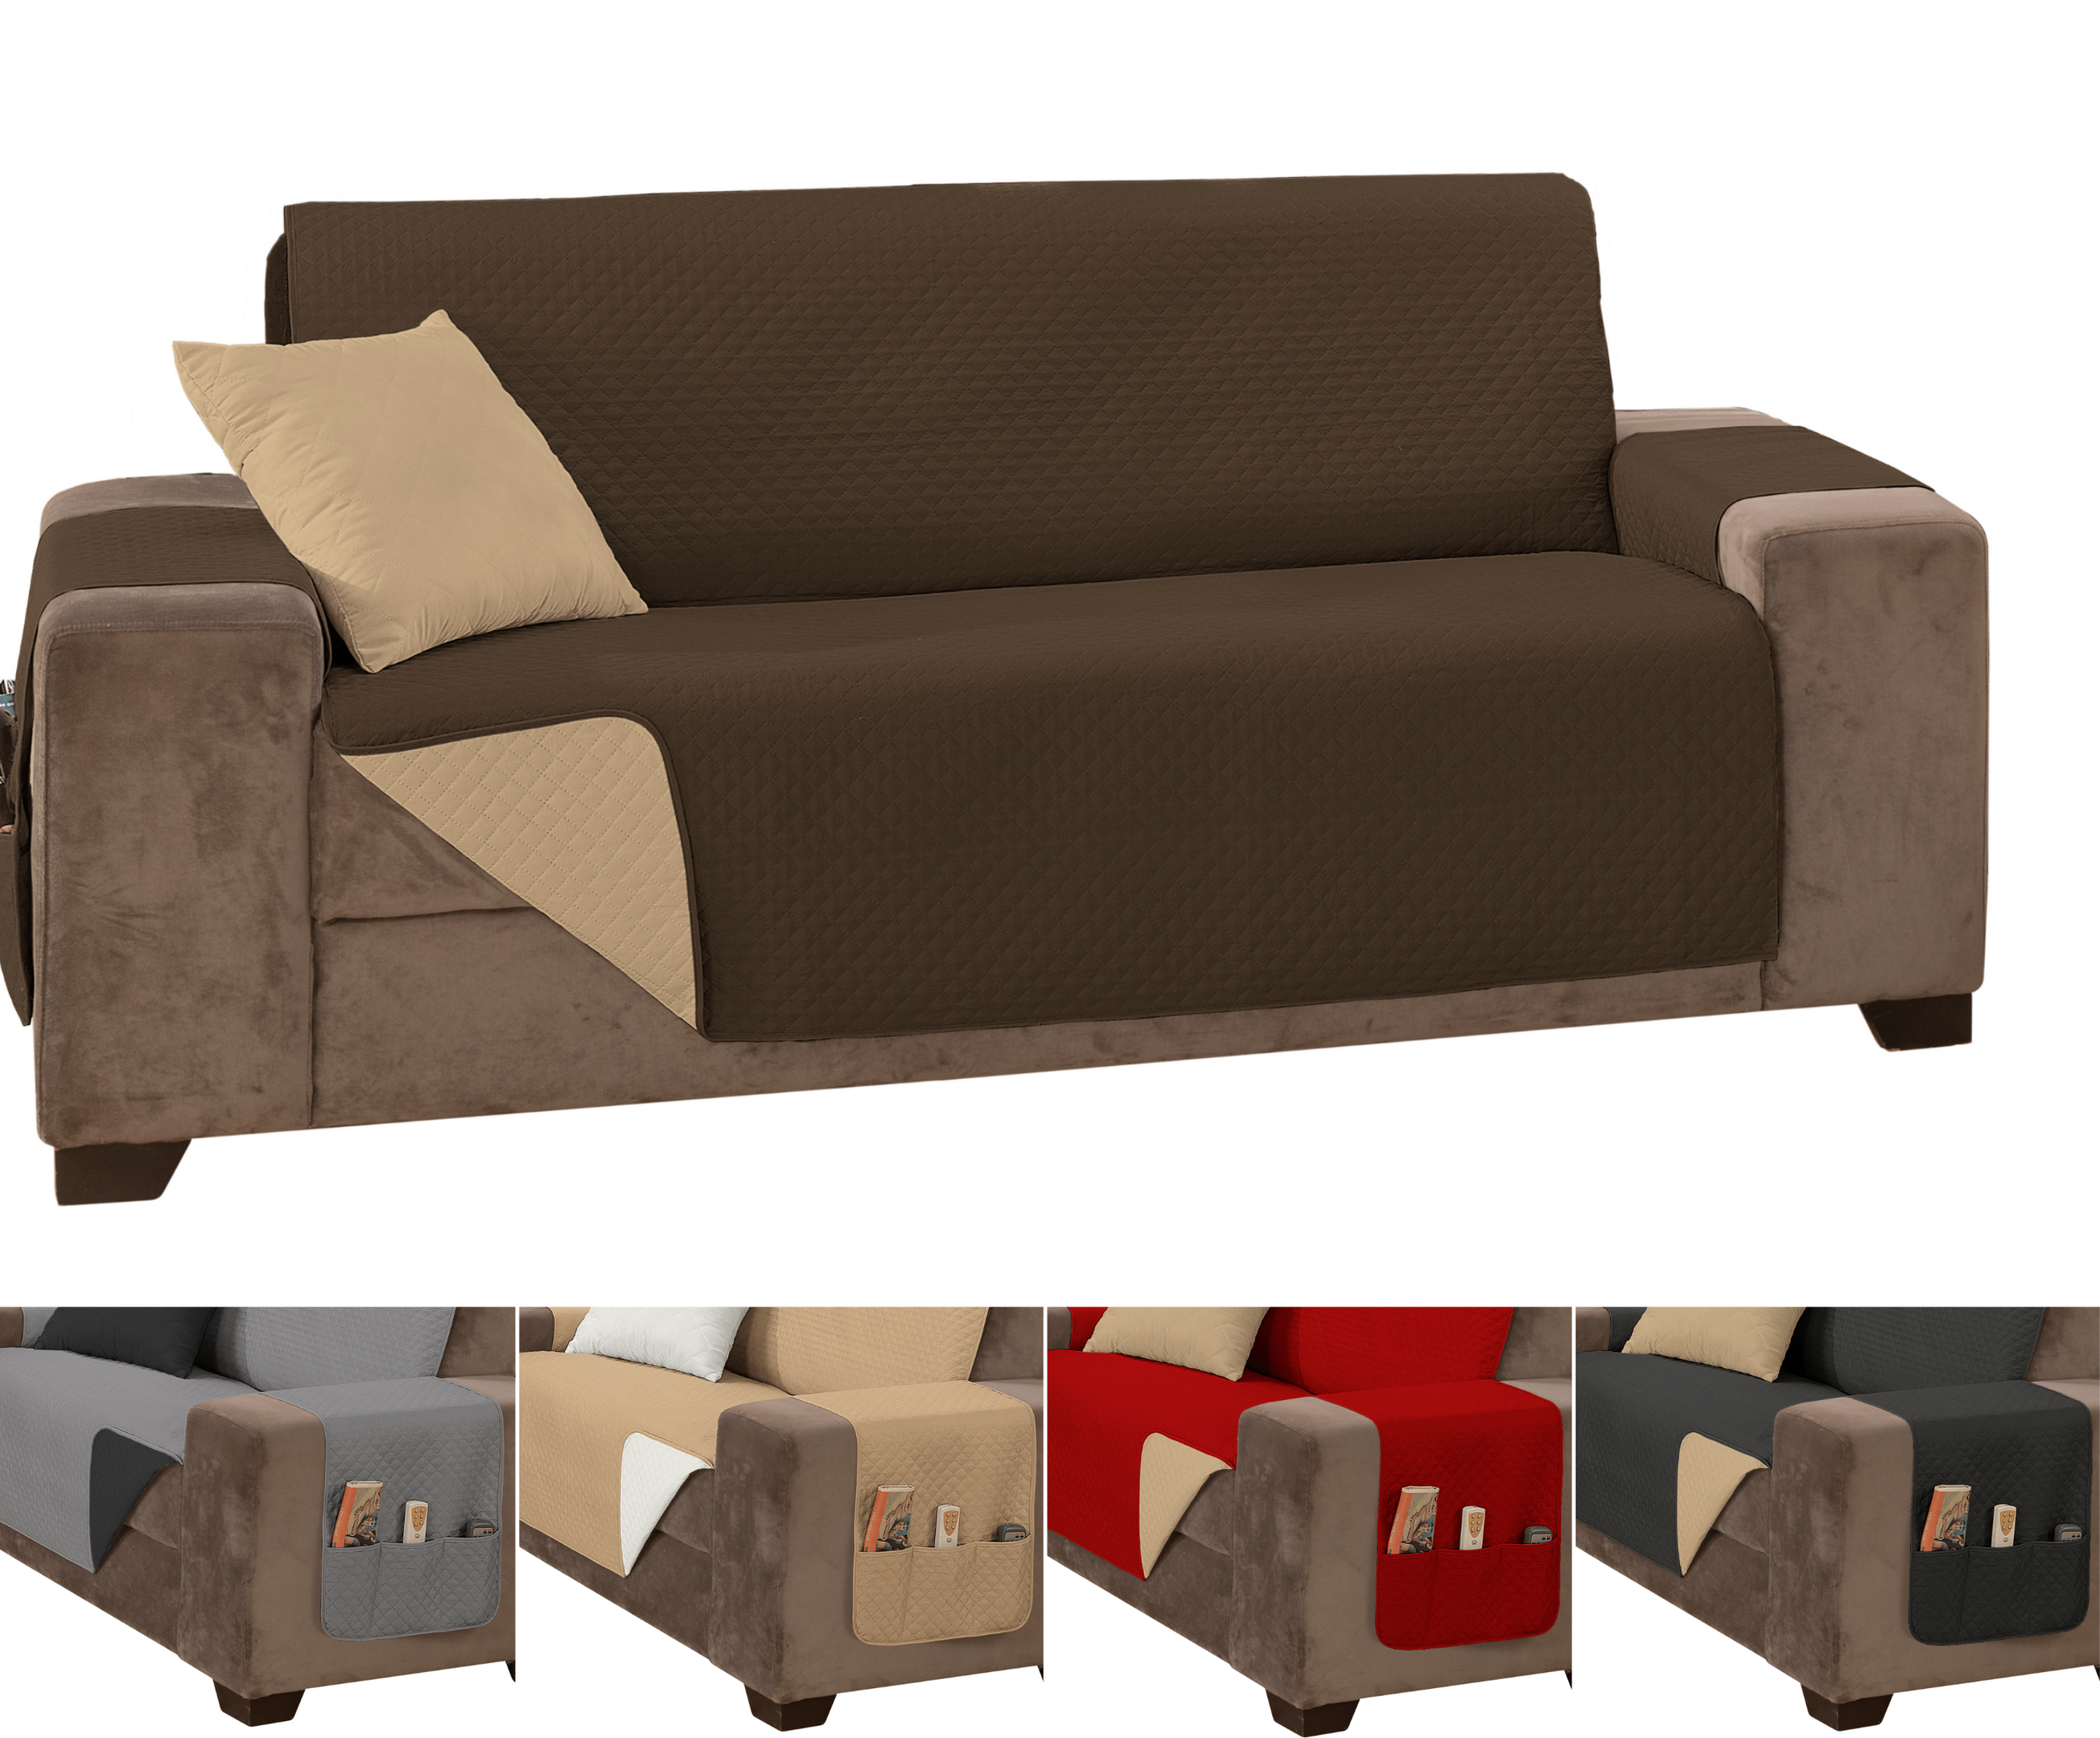 Capa sofá impermeavel ultrassonico tamanho padrão 2 lugares 1,1m marrom e caqui - 5